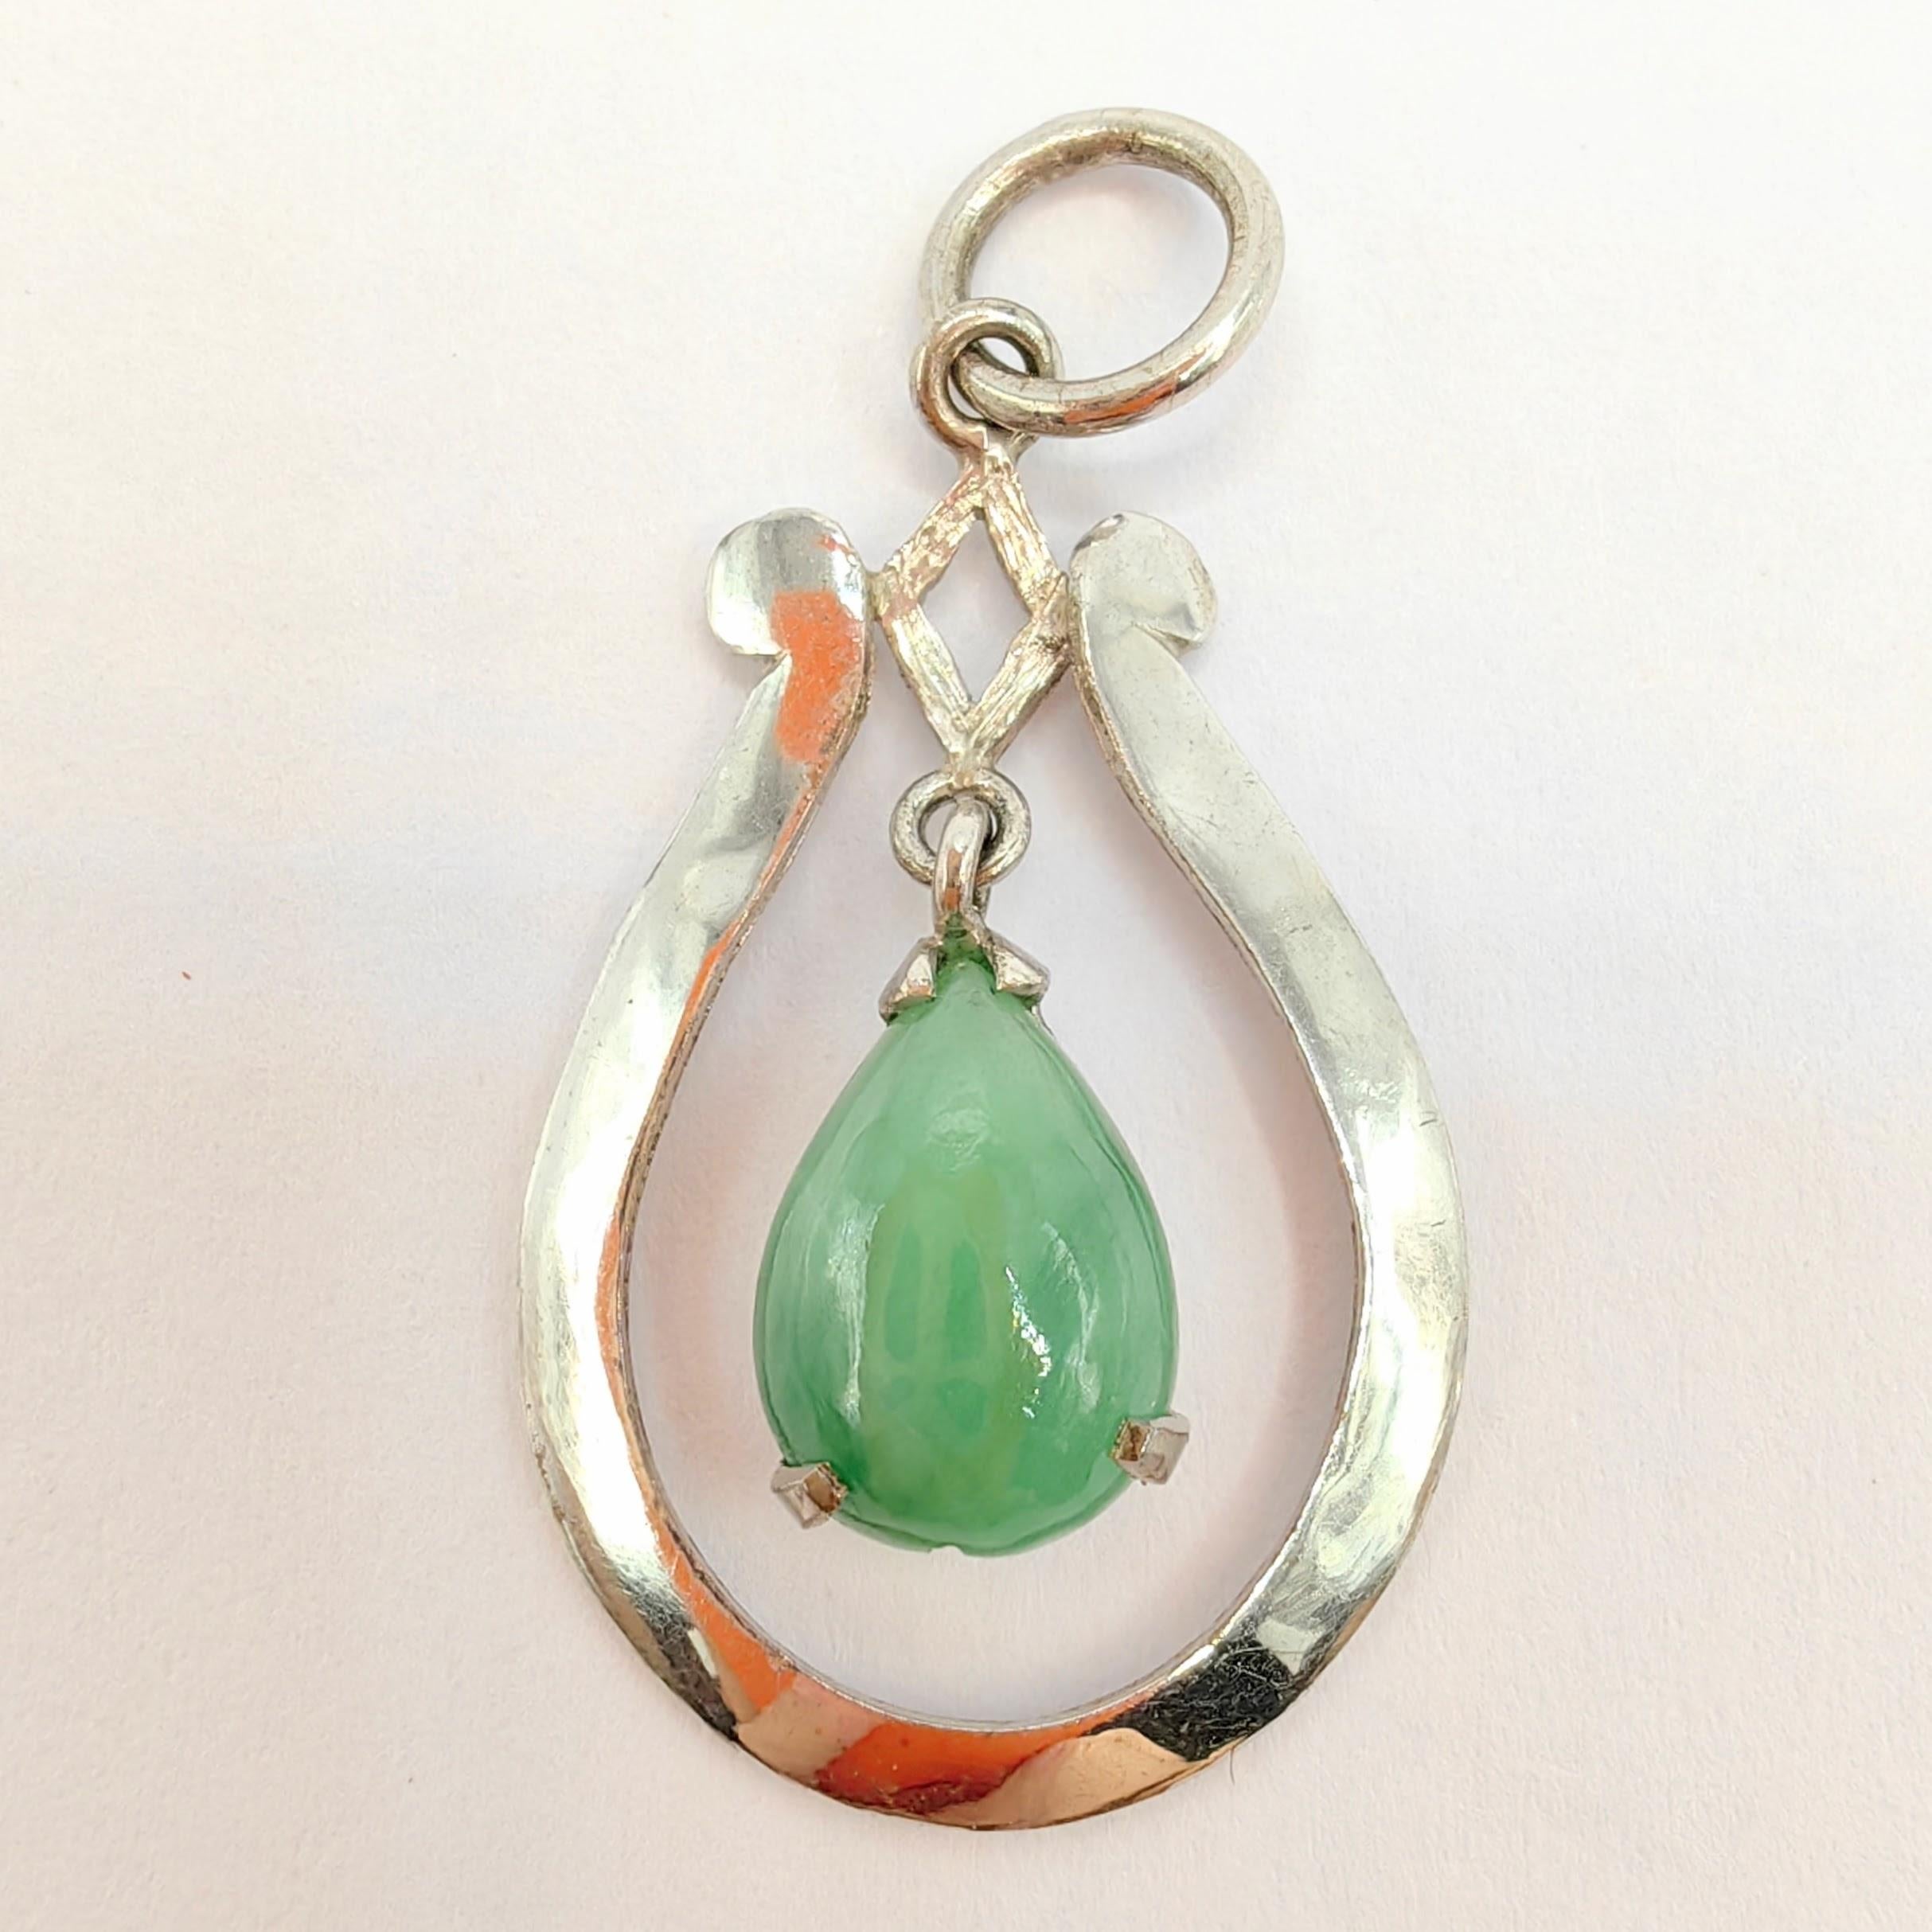 Voici notre pendentif Vintage Pear Shaped Teardrop Jade en argent sterling, une pièce vraiment captivante qui combine sans effort l'allure naturelle du jade avec l'élégance intemporelle de l'argent sterling.

Au cœur de ce pendentif se trouve un